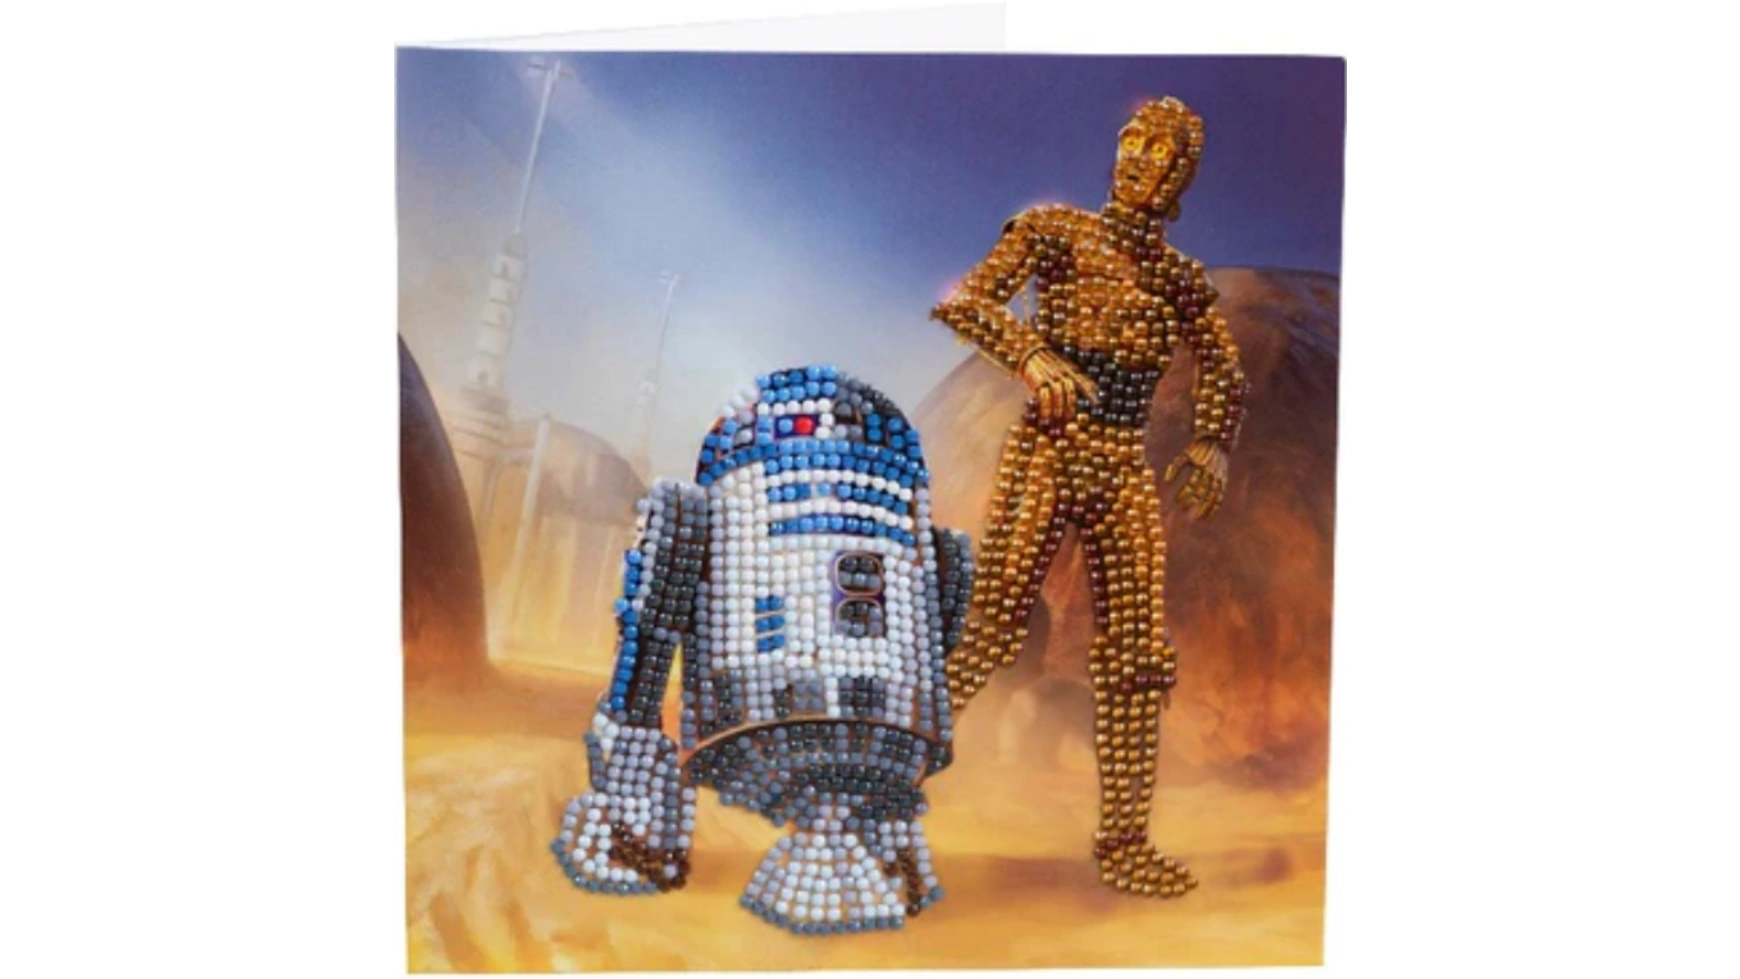 Craft Buddy Crystal Art Алмазная картина R2-D2 и C-3PO 18x18см Кристаллическая художественная открытка